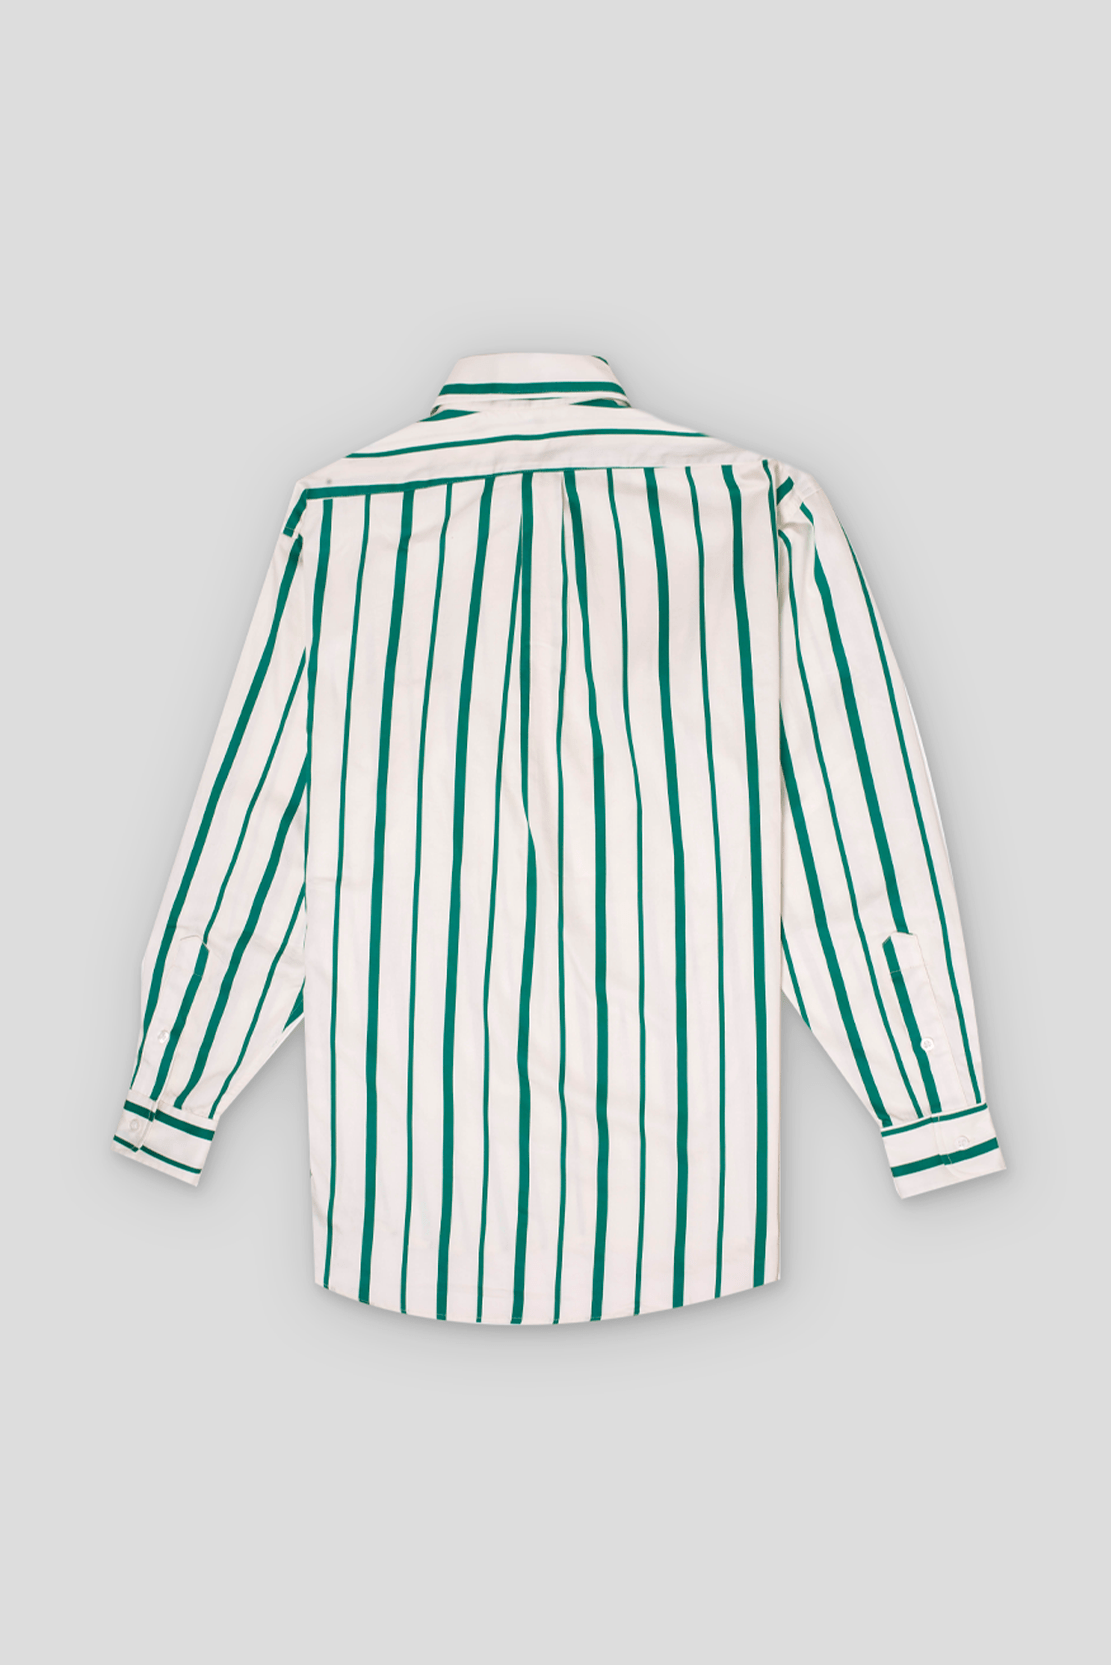 Imagem do produto Shirt Varadero Stripes